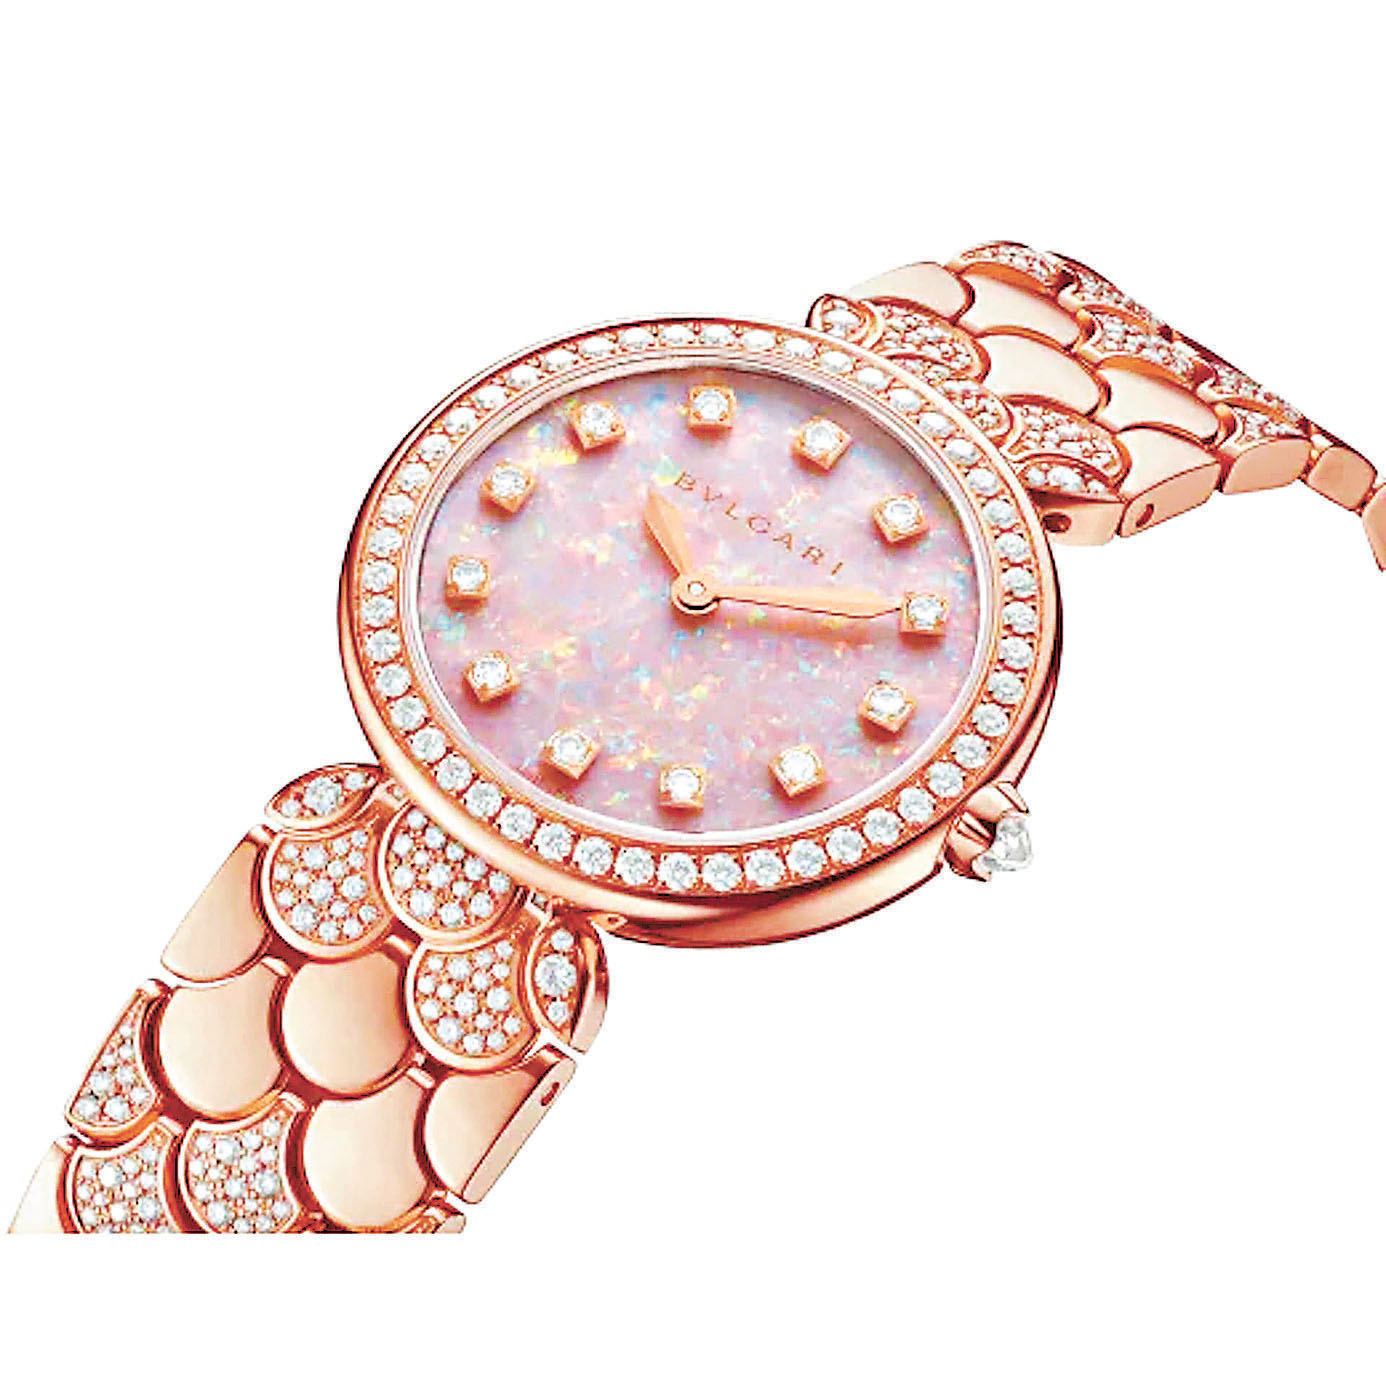 ■BVLGARI 腕錶採用了18K玫瑰金錶殼。